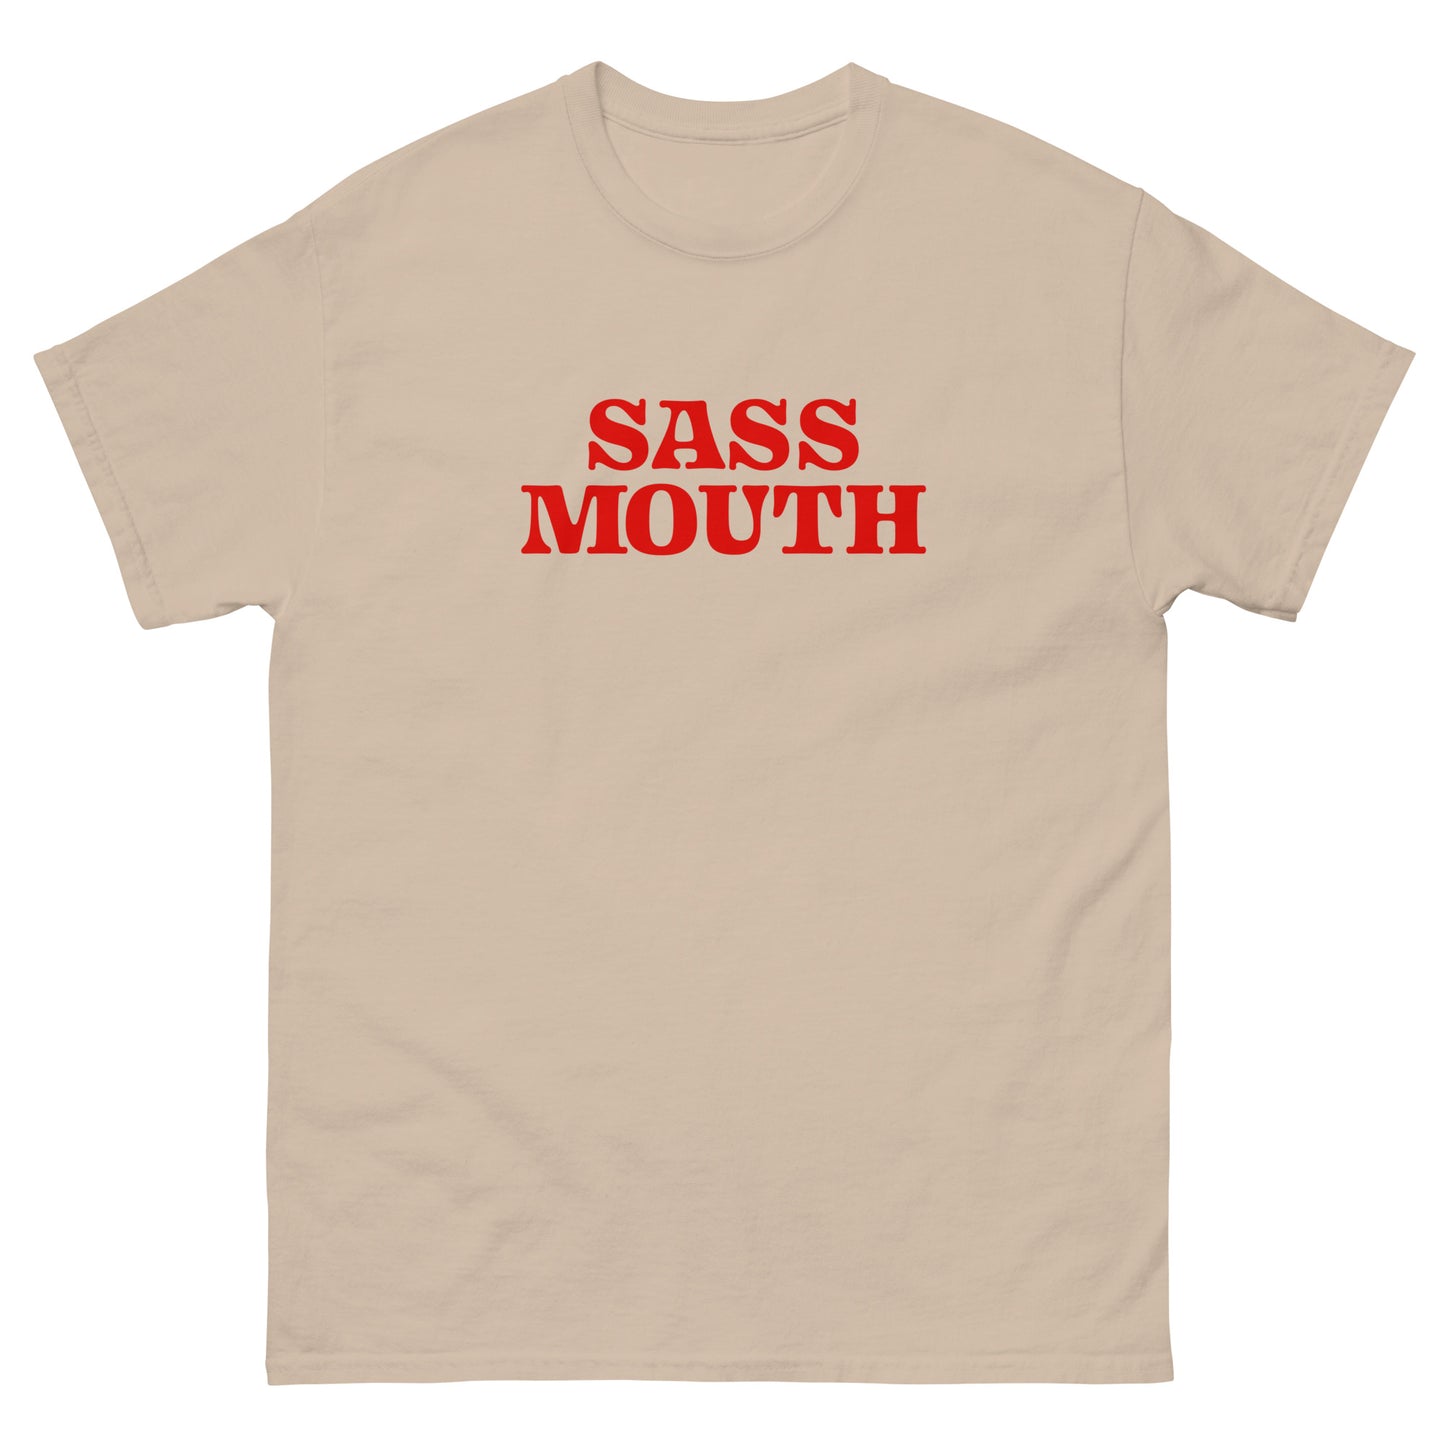 #SassMouth - Structured Gender Neutral Cotton T-shirt